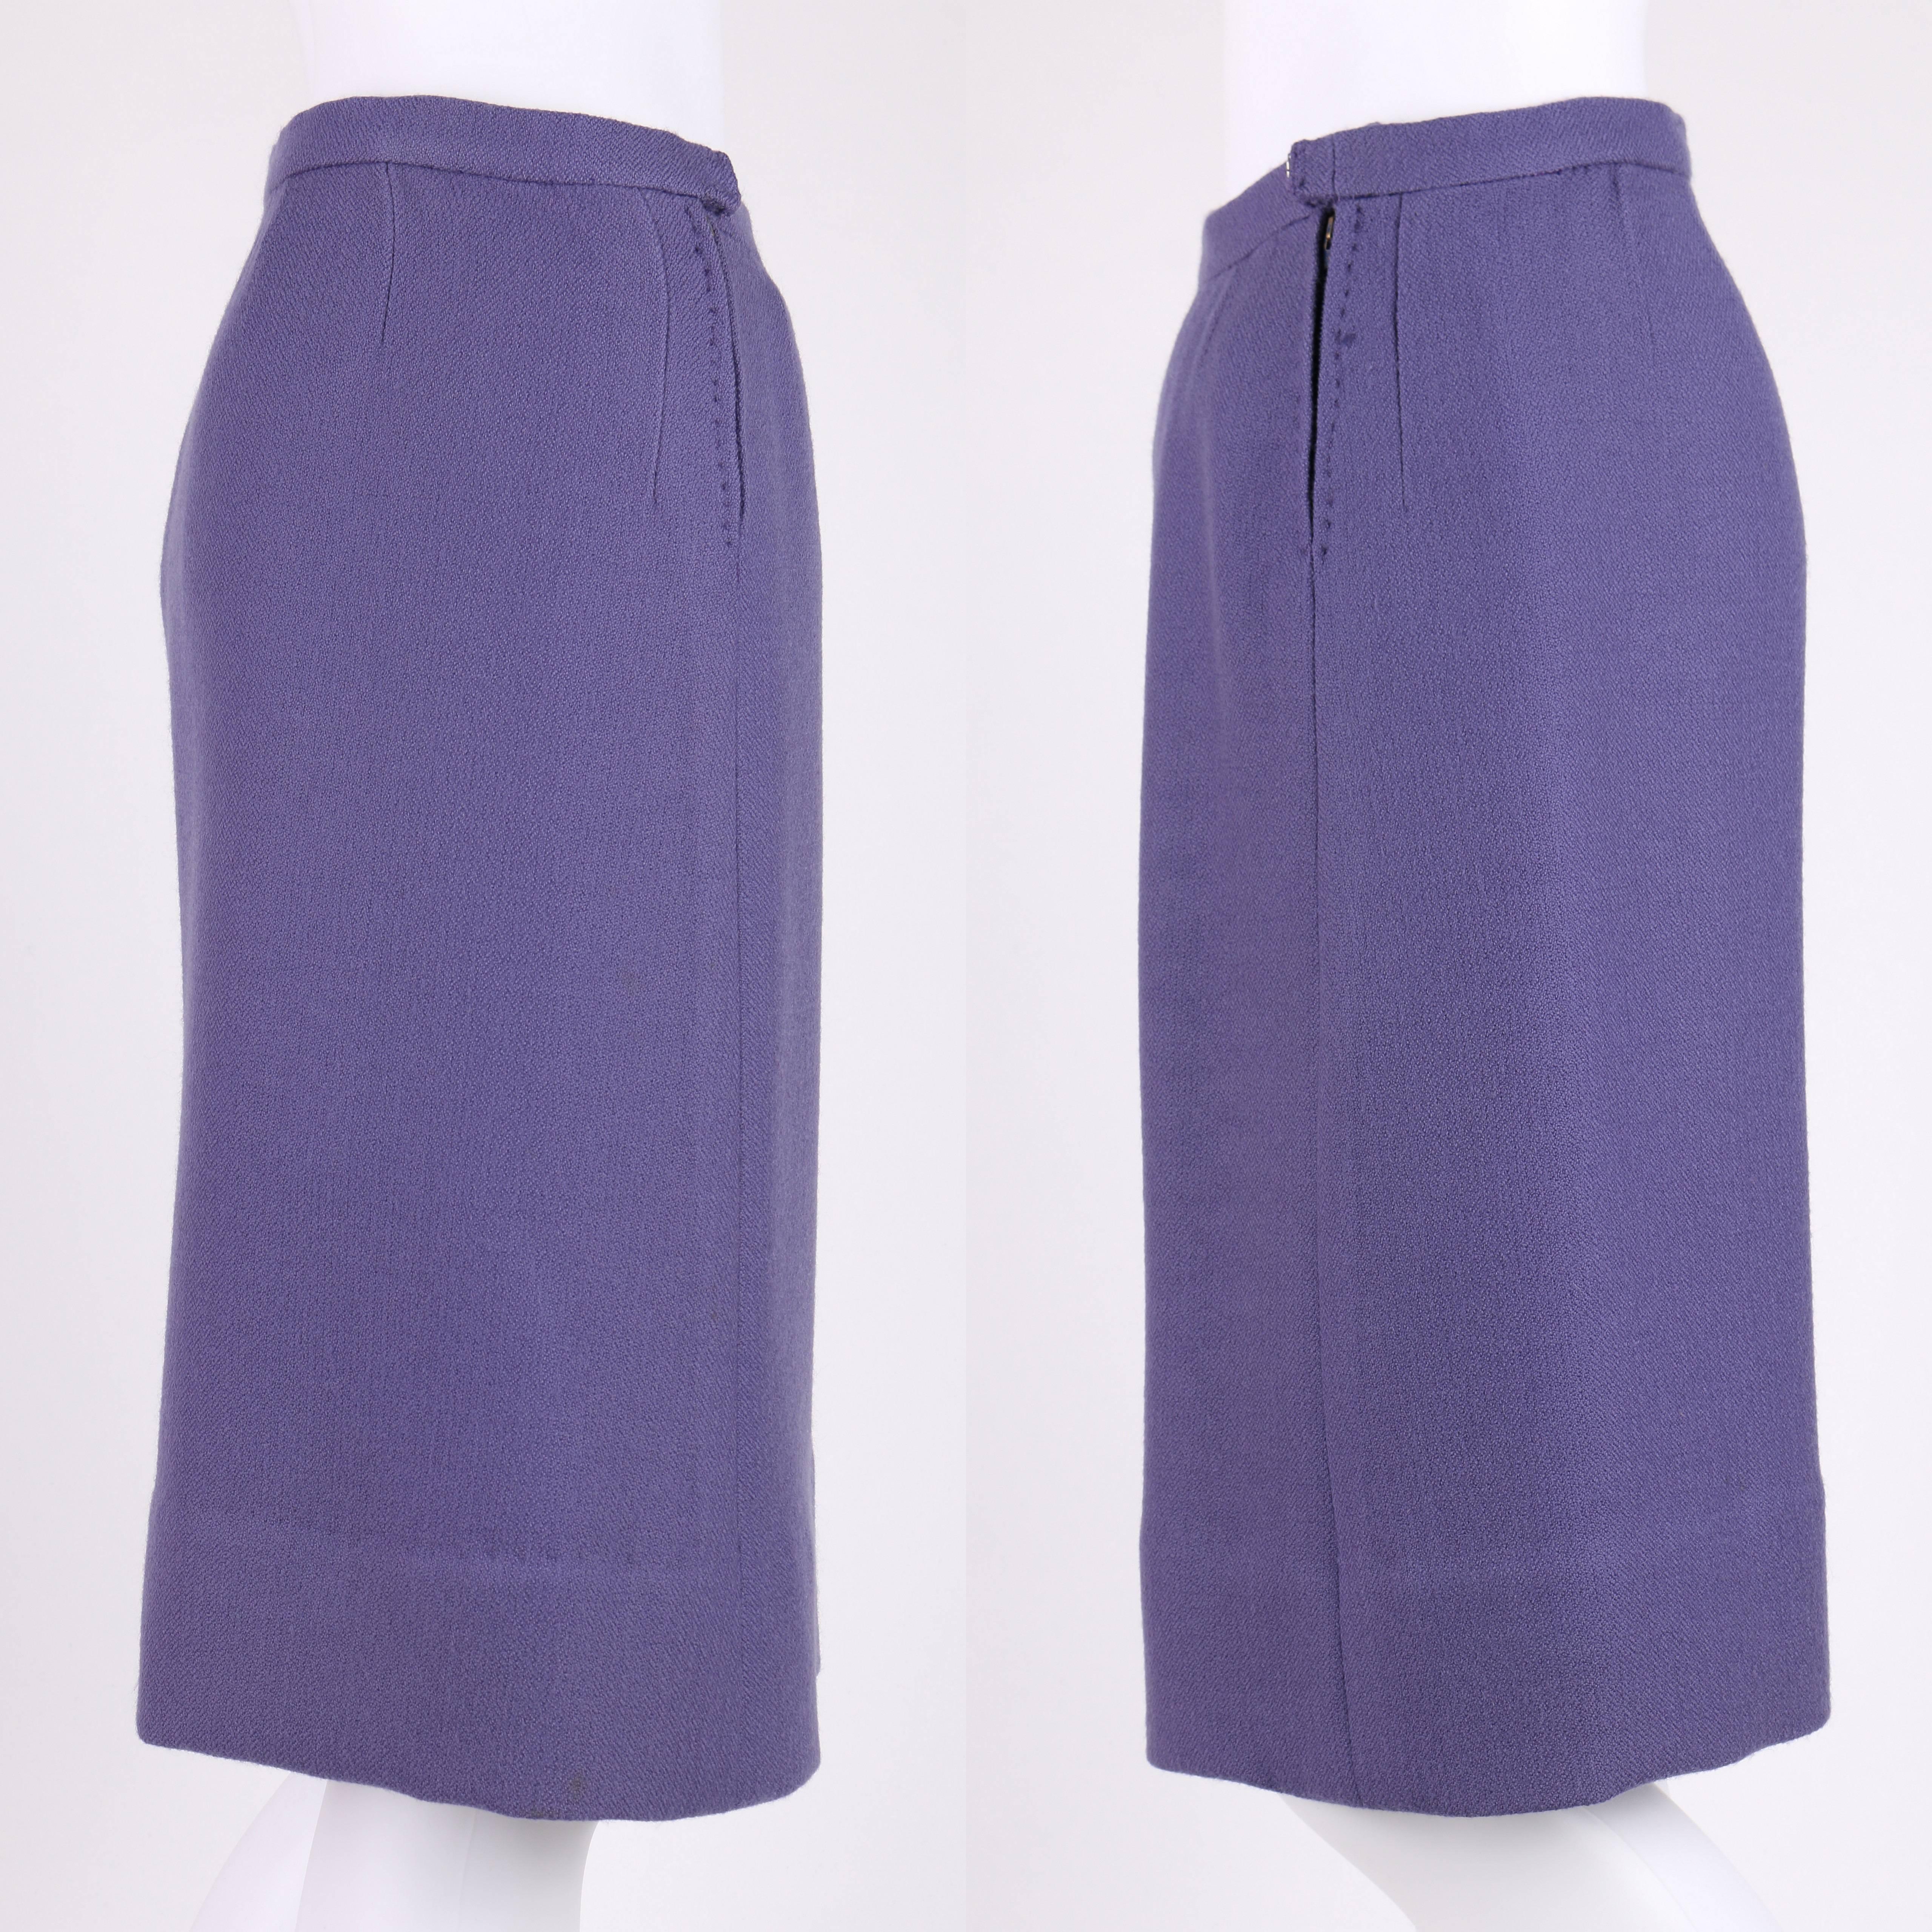 Women's JEANNE LANVIN c.1960's 3 Piece Purple & Ivory Wool Blazer Tank Top Skirt Suit